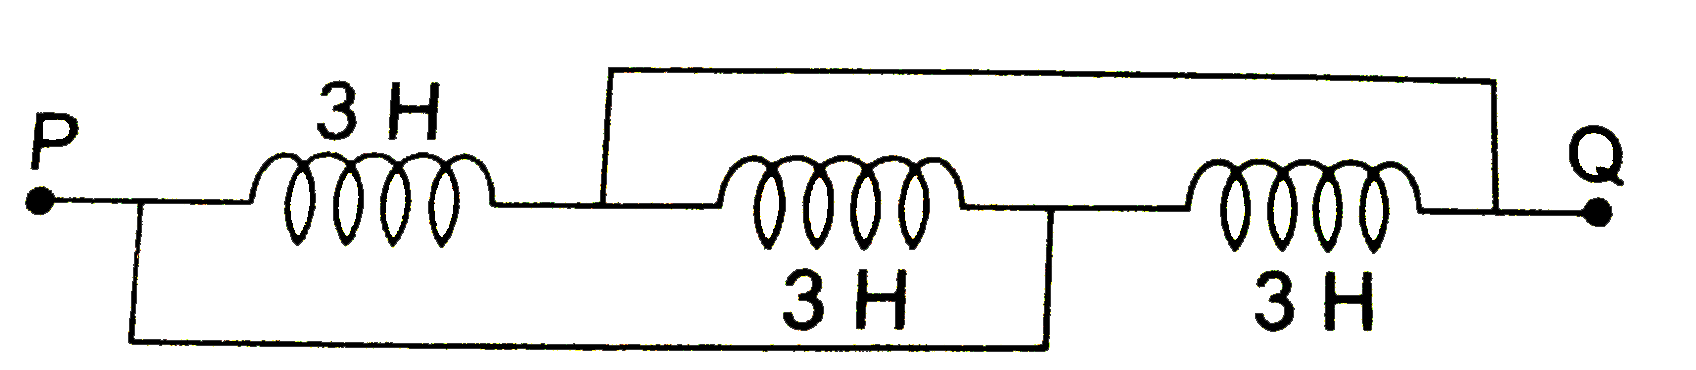 तीन प्रेरित्र (inductors) जिनके समान प्रेरकत्व (inductance) 3 H हैं , चित्र के अनुसार संयोजिय हैं । P एंव Q के बीच तुल्य प्रेरकत्व हैं